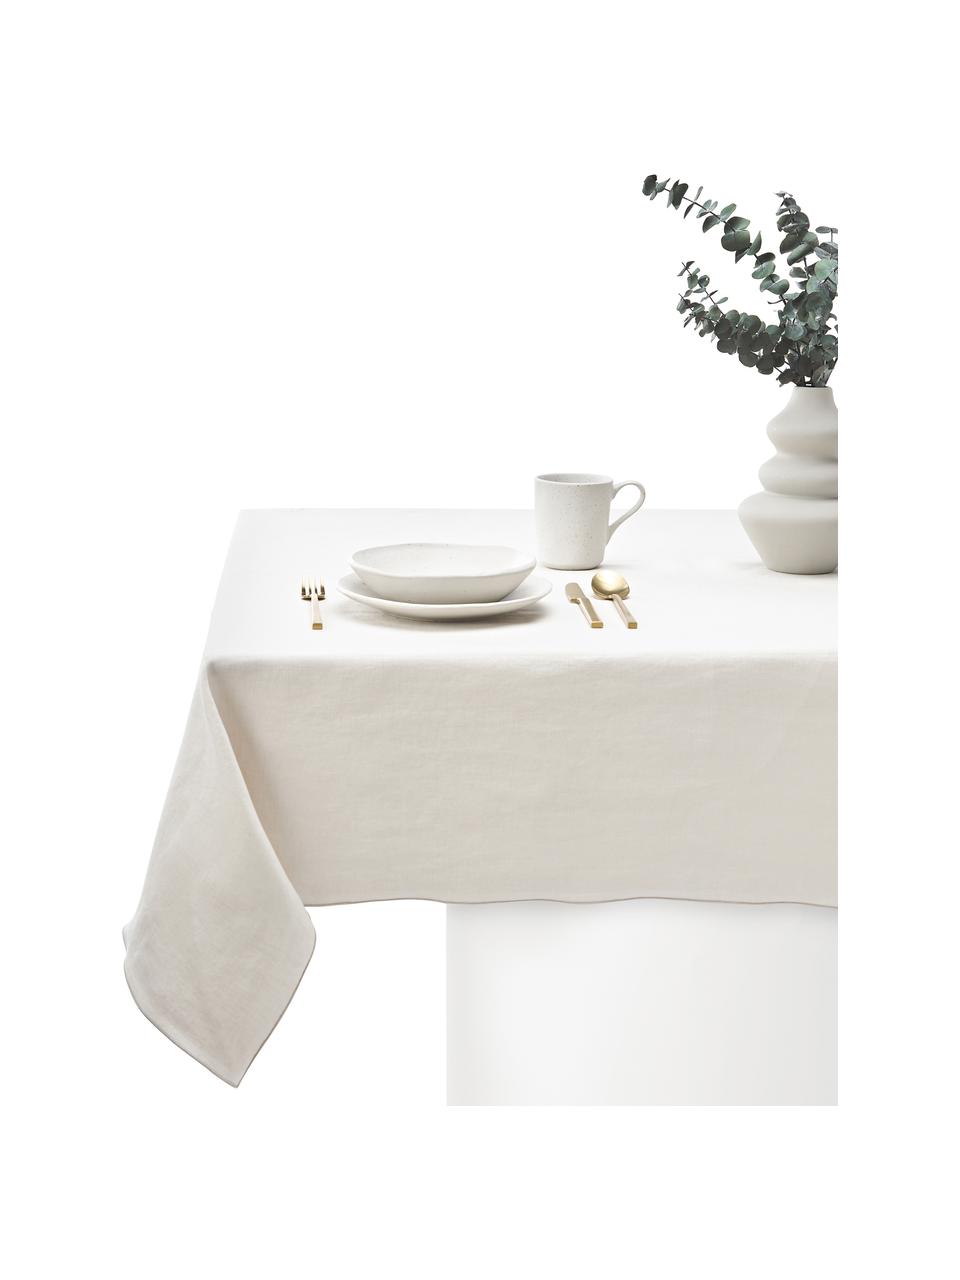 Leinen-Tischdecke Kennedy mit Umkettelung, 100 % gewaschenes Leinen, European Flax zertifiziert, Beige, B 140 x L 250 cm